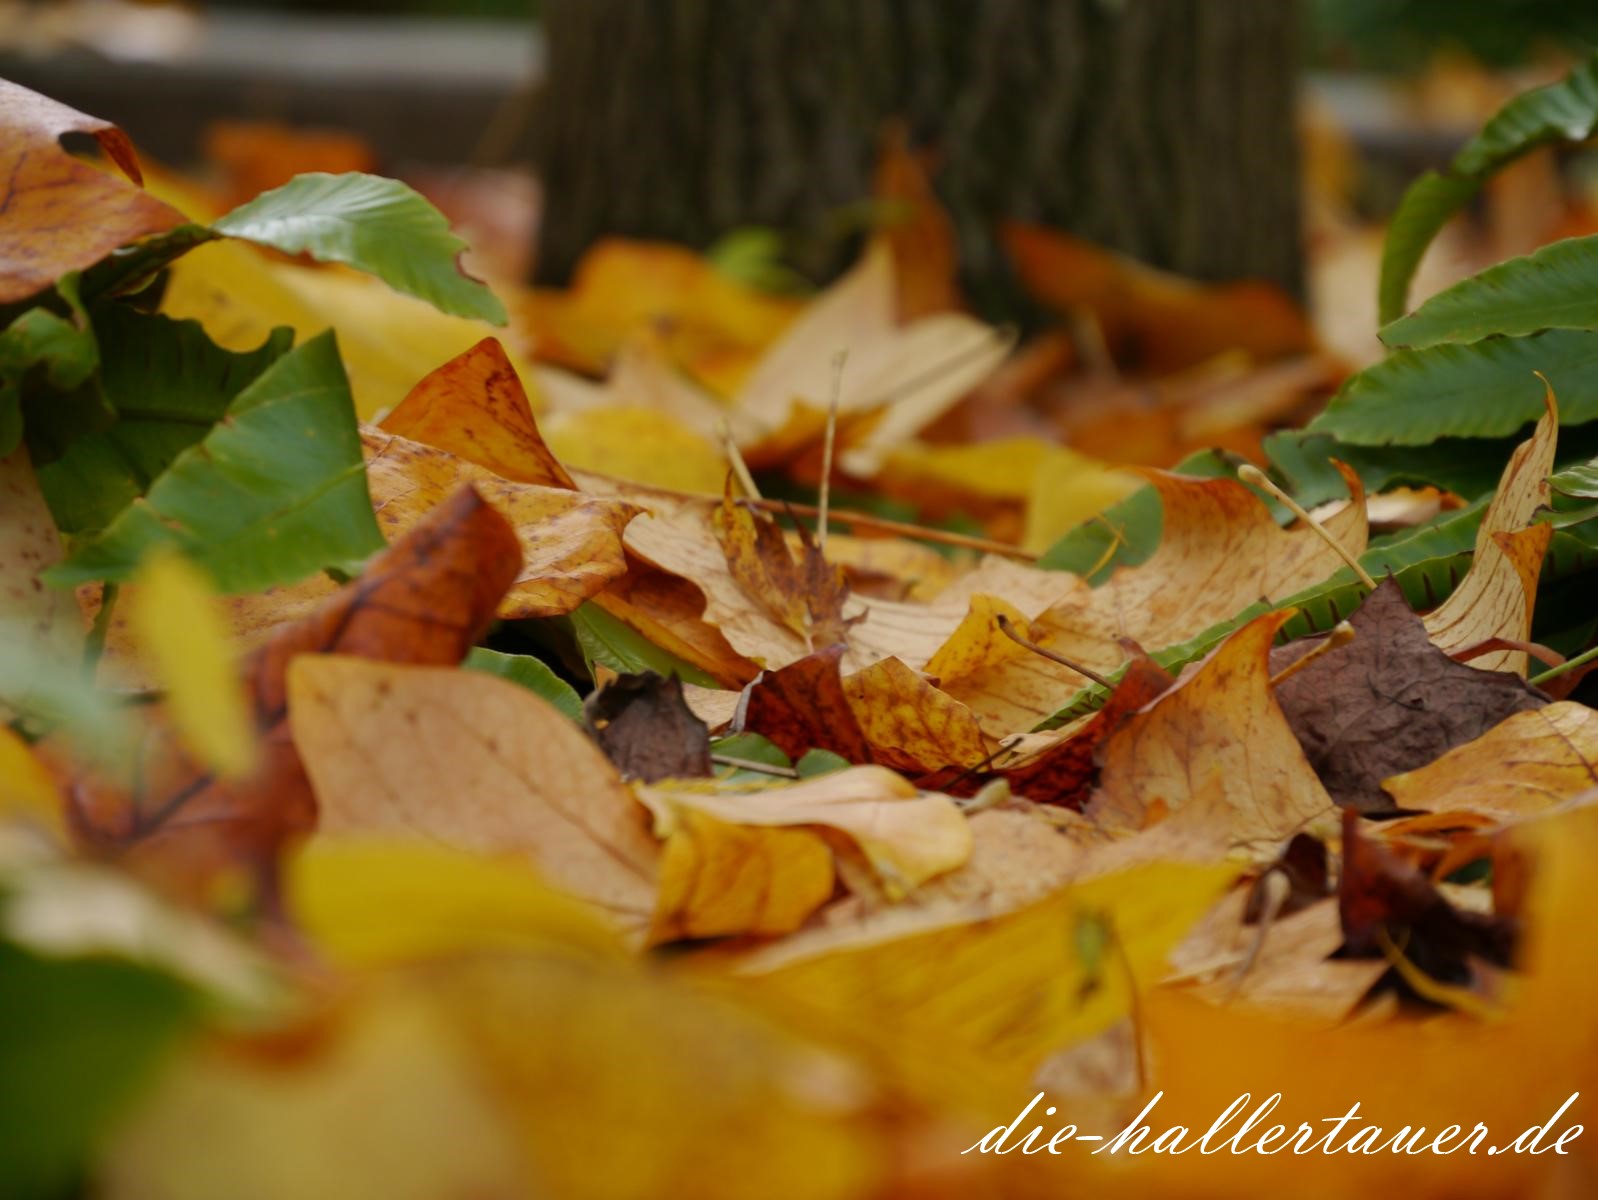 Hallertau Herbstblätter